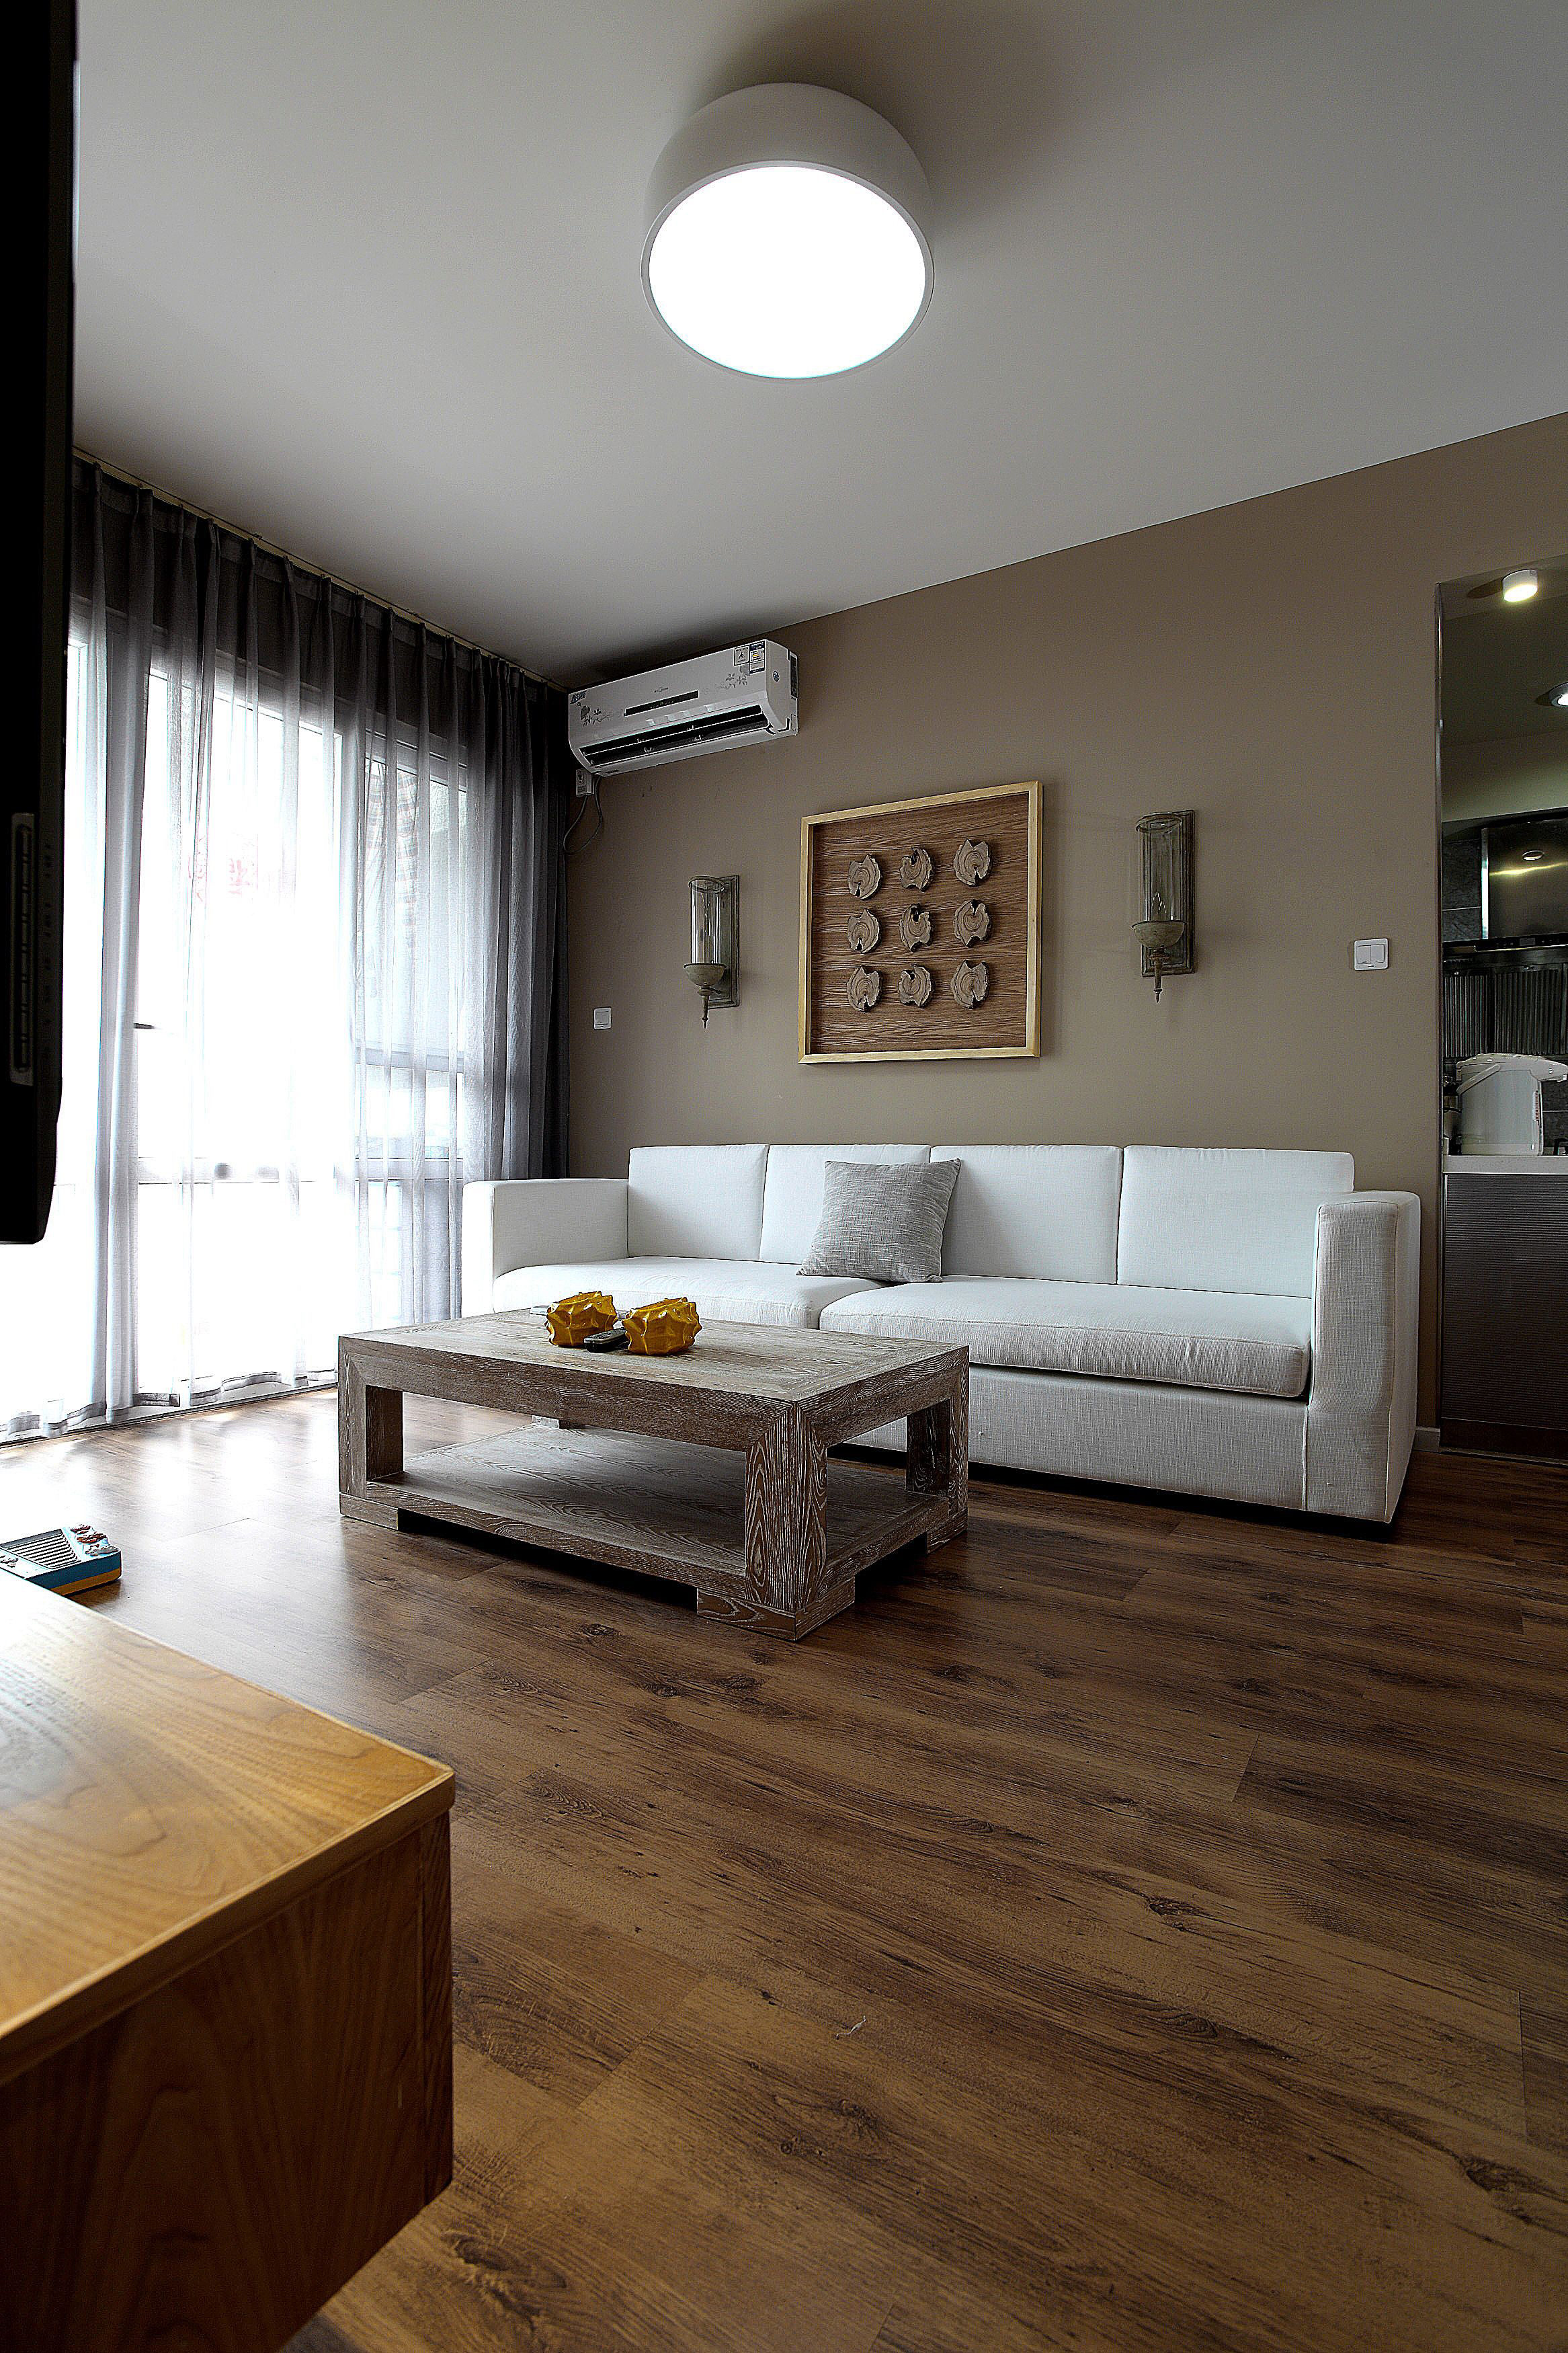 白色沙发加全屋木色地板,简约风格不失单调